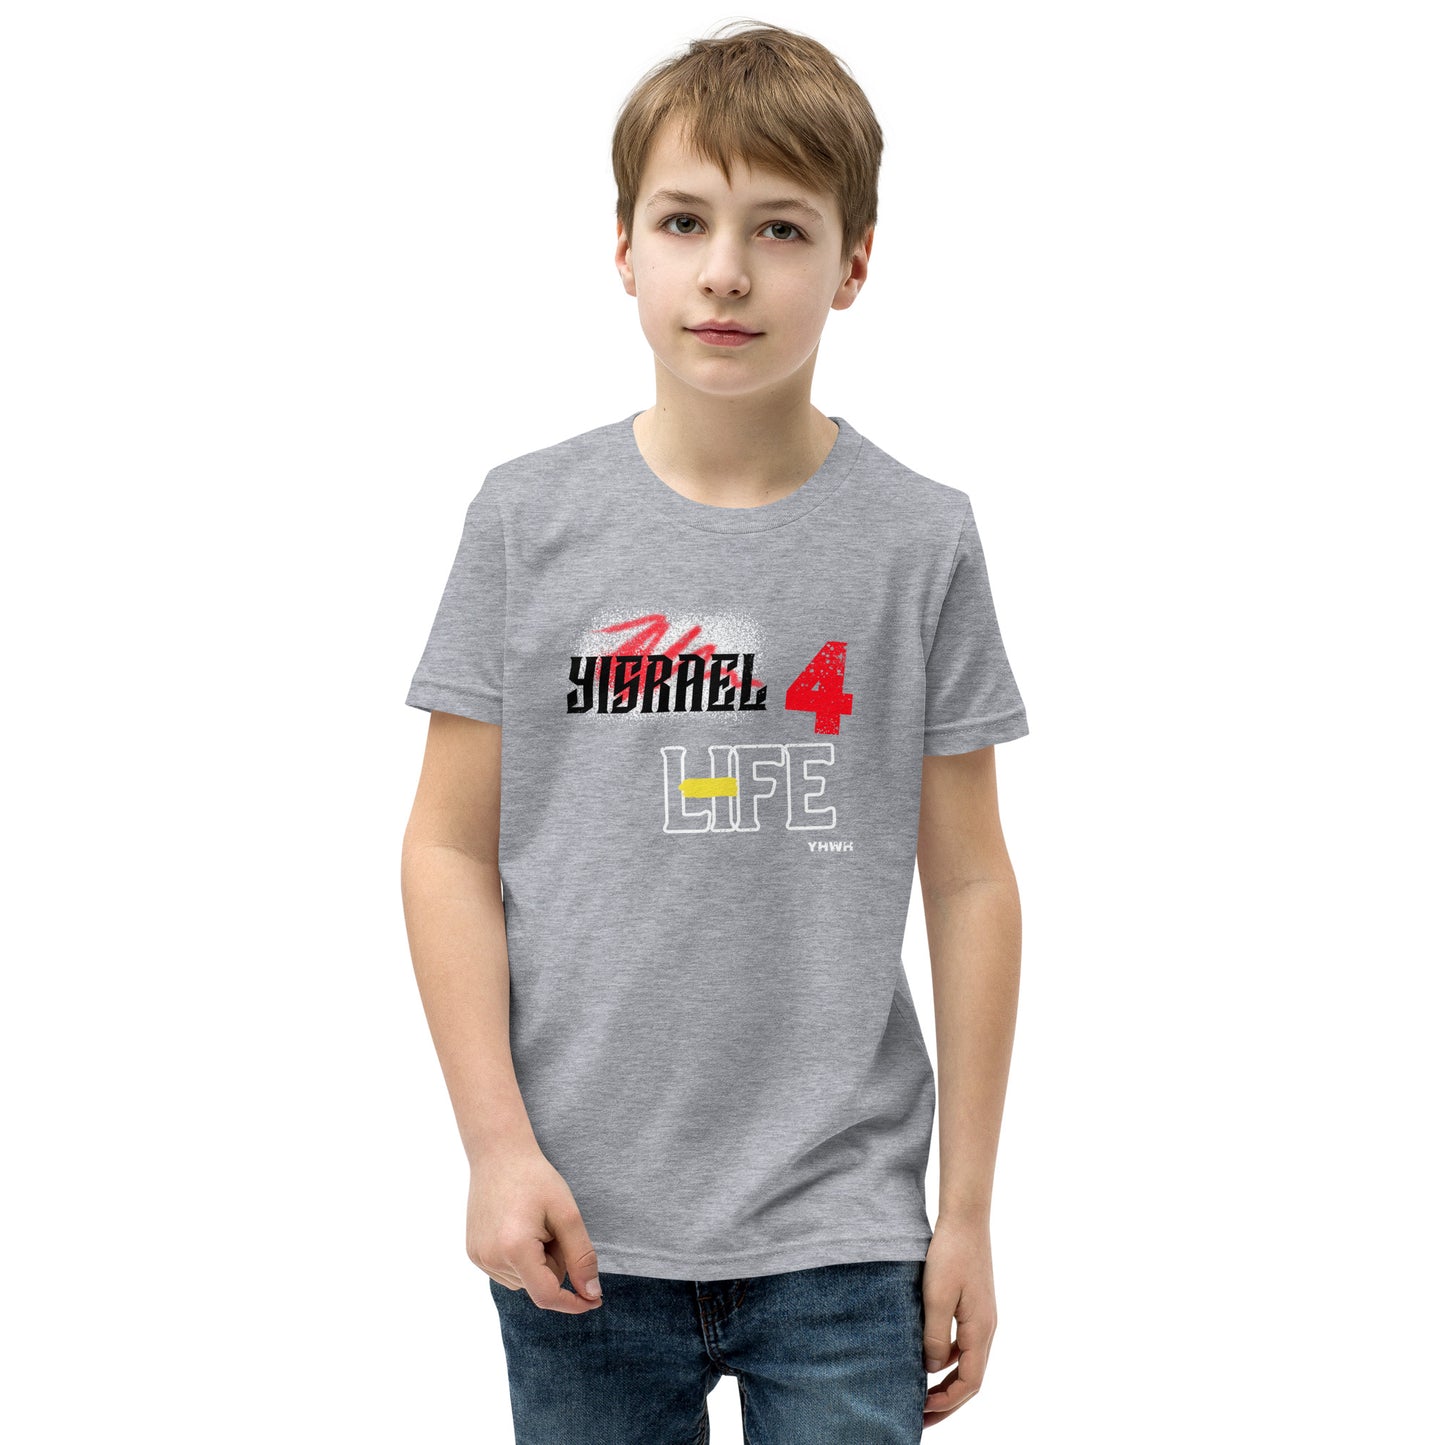 Boys Yisrael 4life T-Shirt